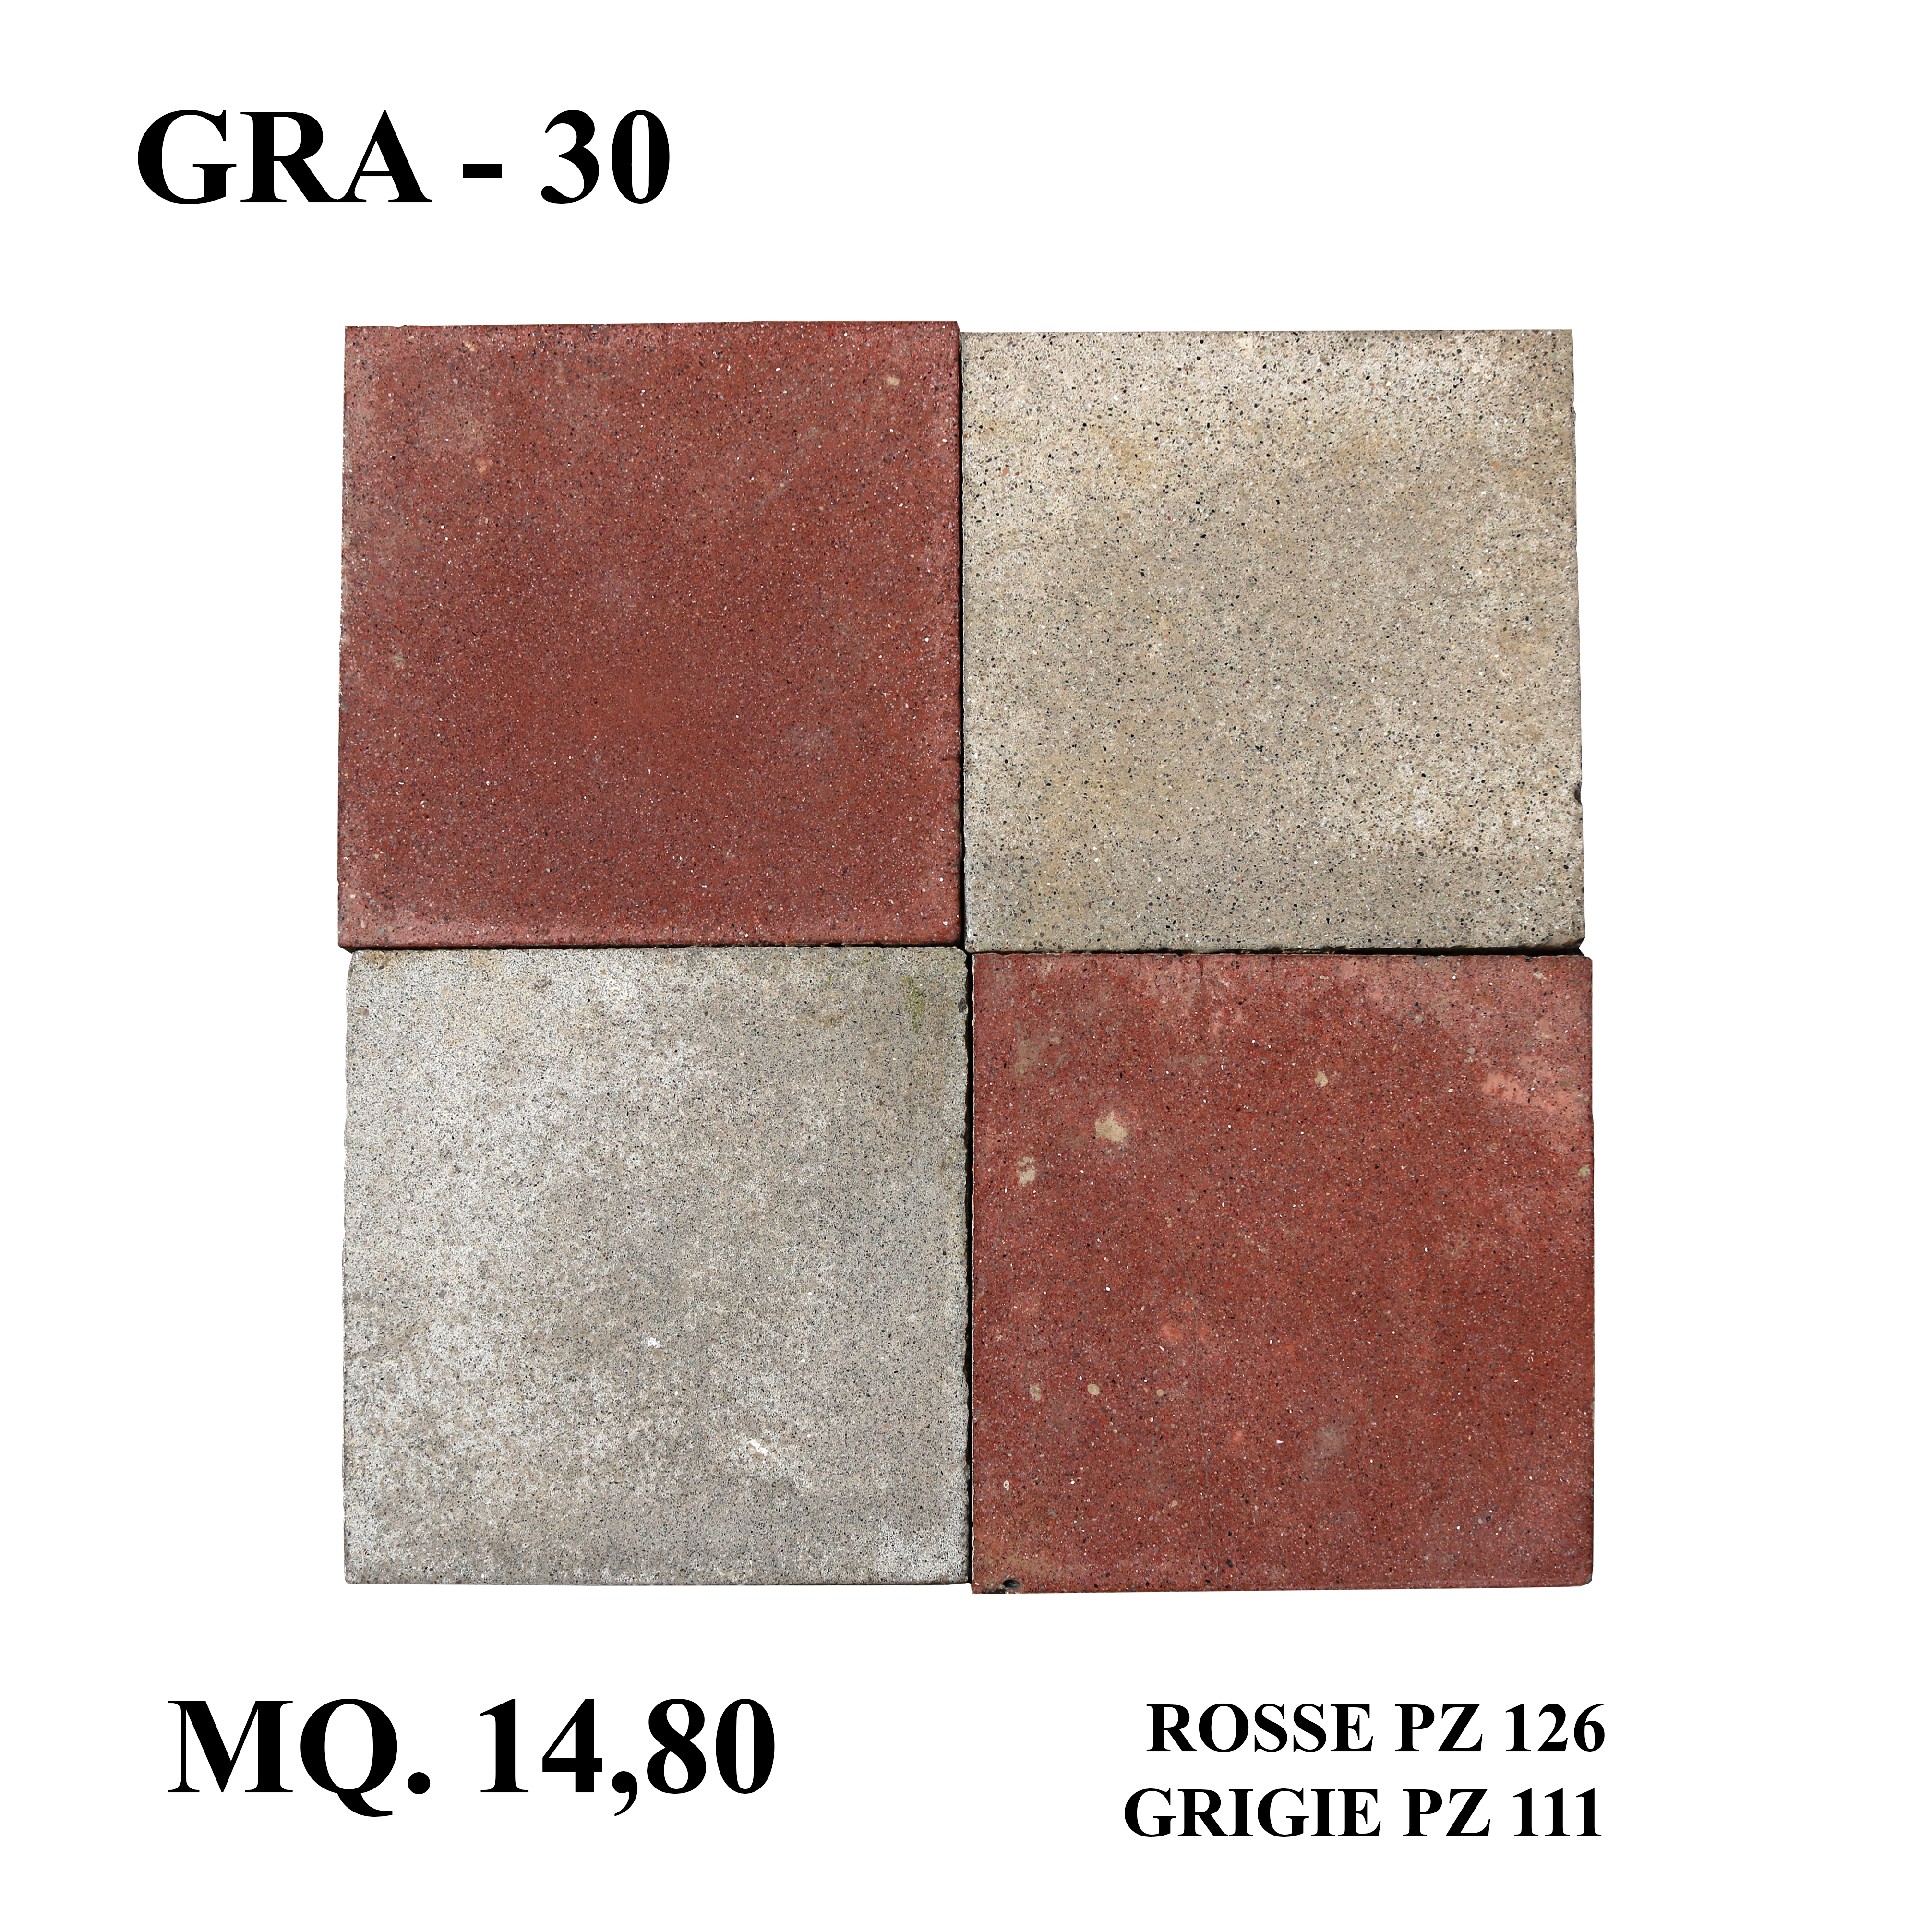 Antica pavimentazione in graniglia. cm 25x25. - Cementine e Graniglie - Pavimentazioni Antiche - Prodotti - Antichità Fiorillo